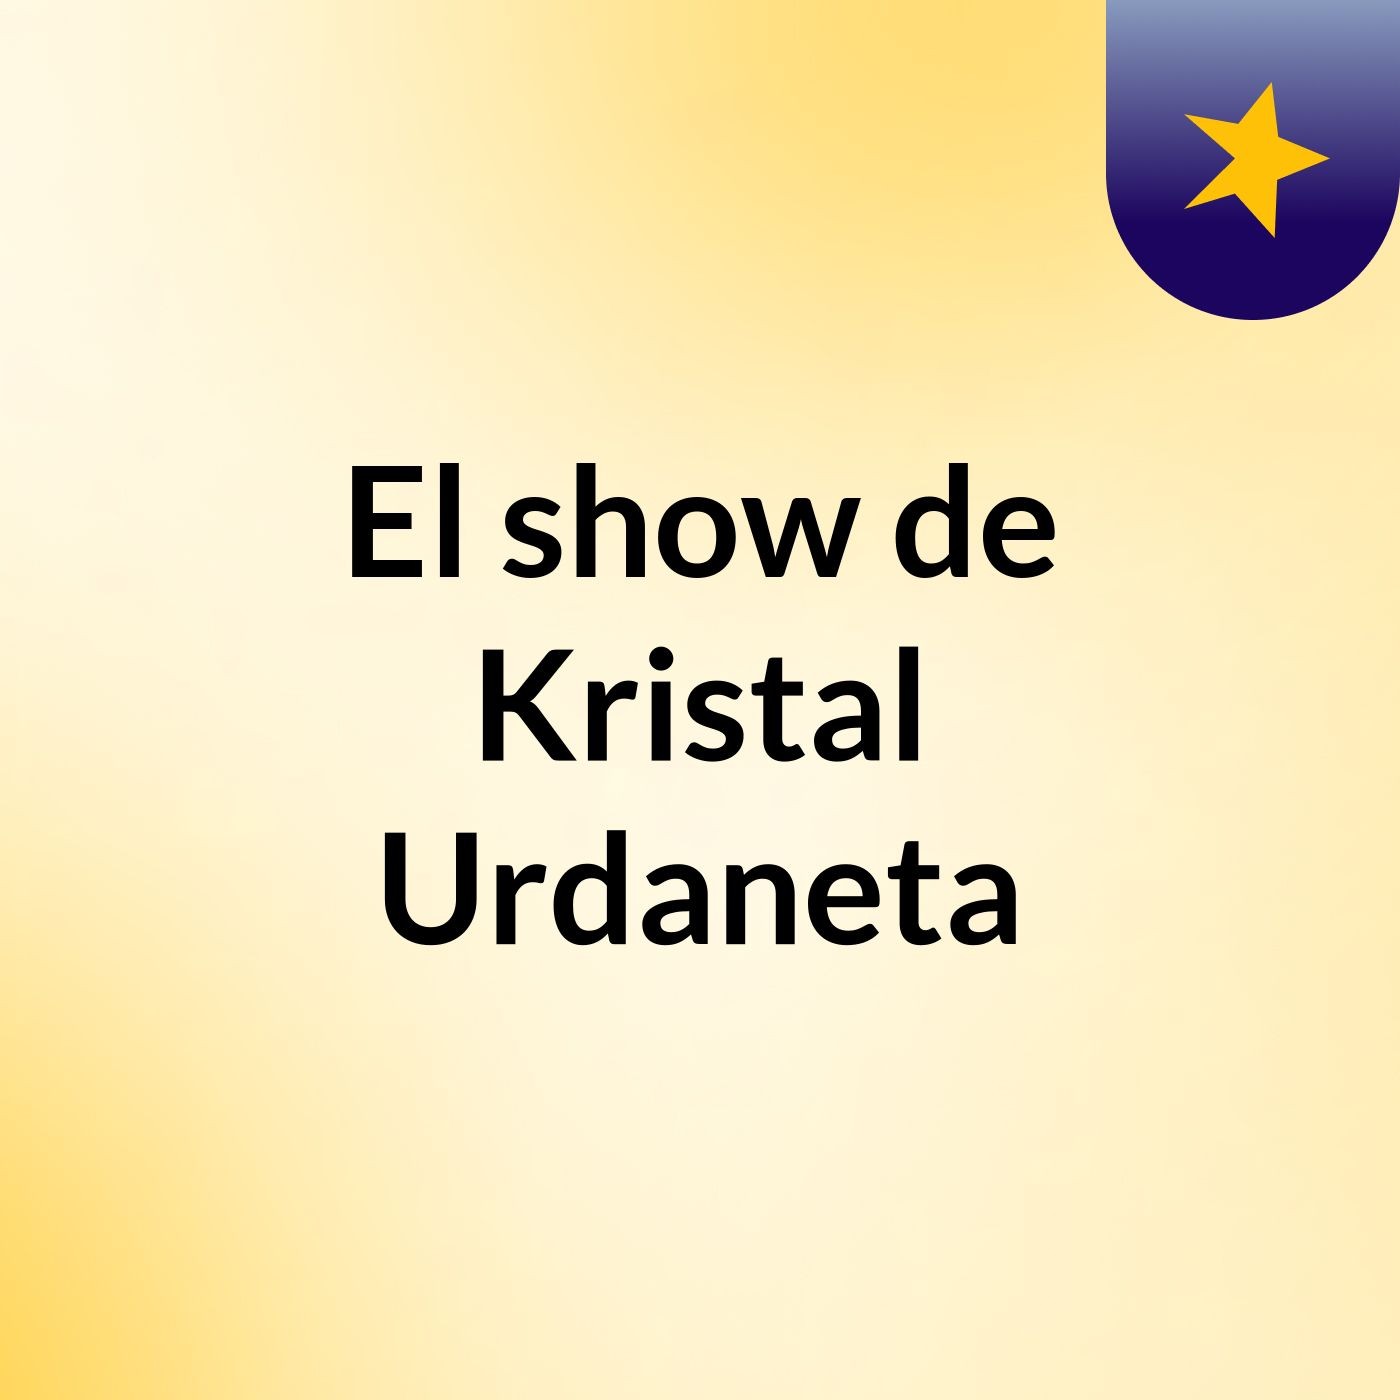 El show de Kristal Urdaneta